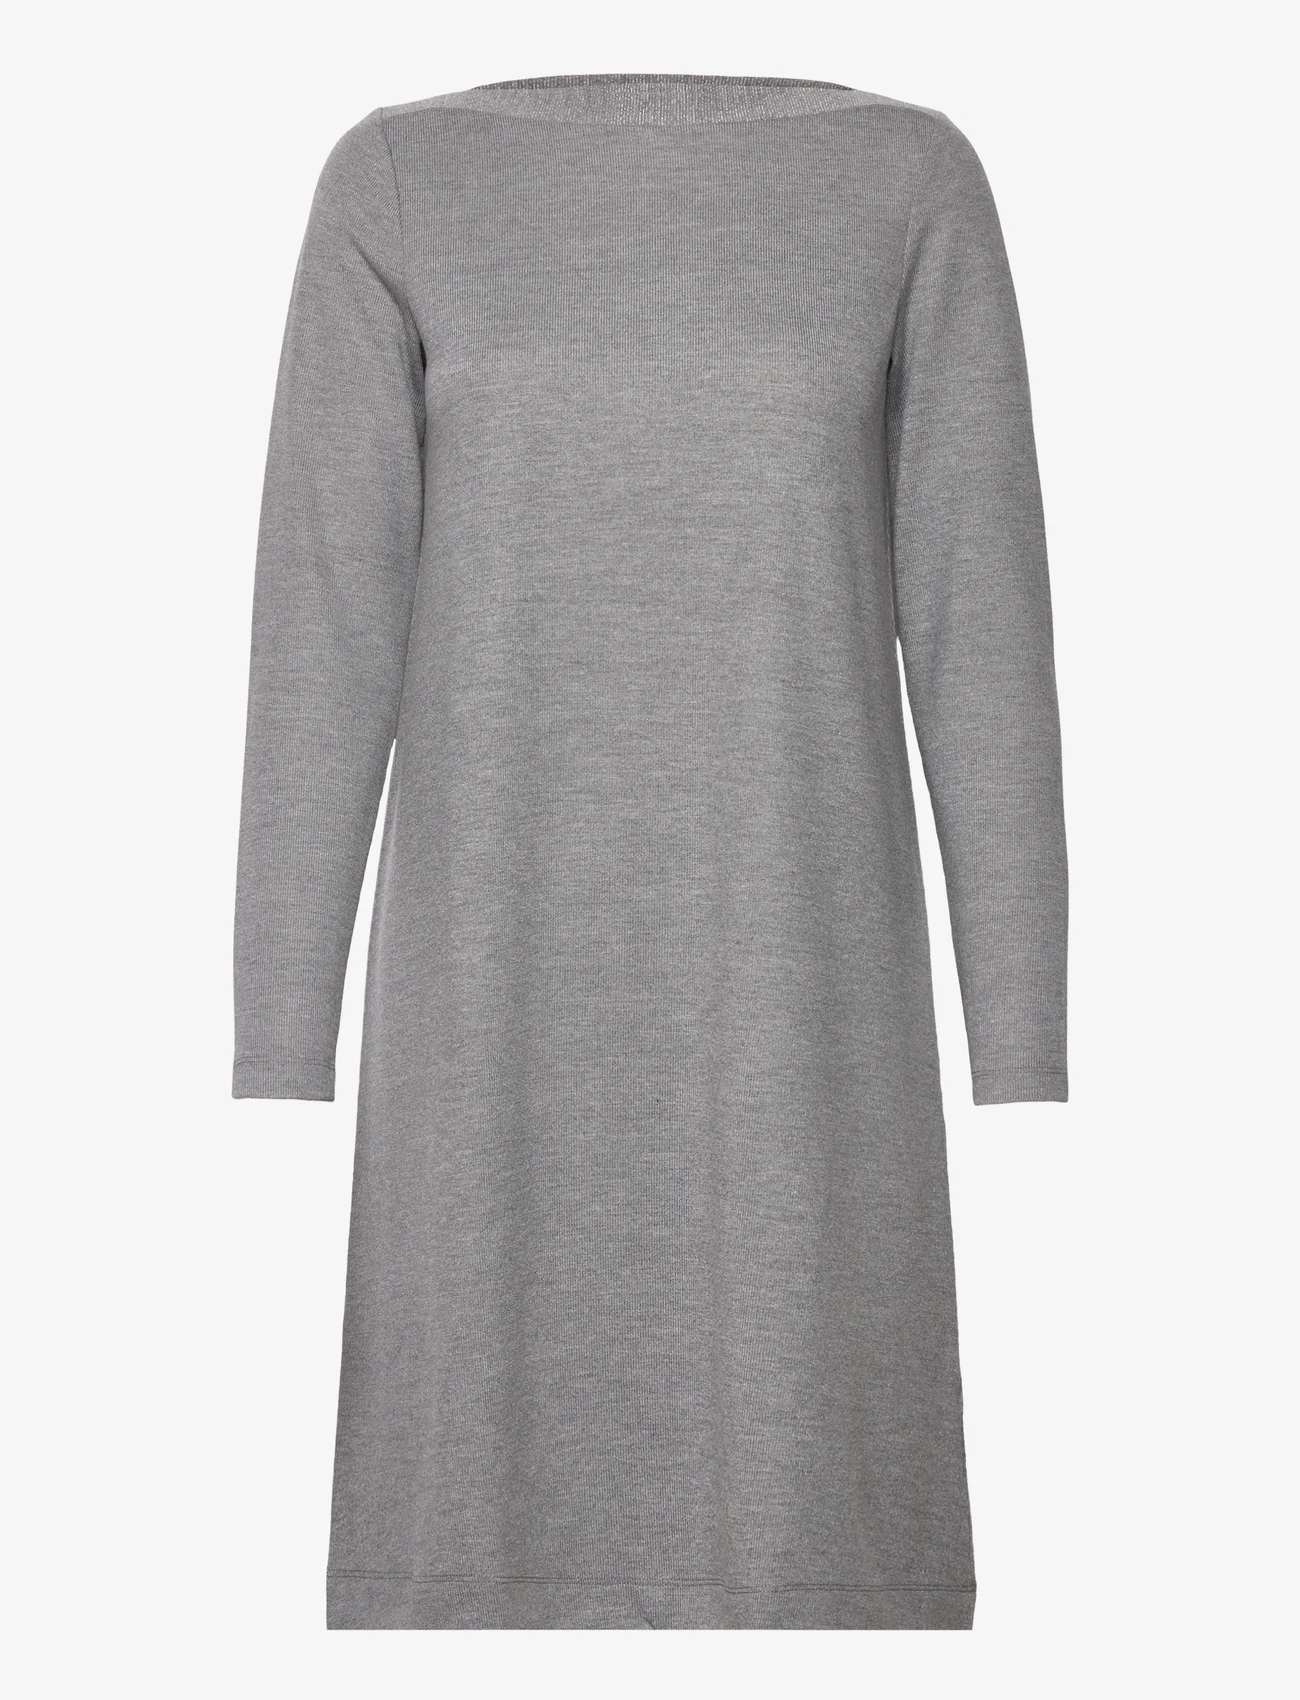 Esprit Collection - Midi dress with a sparkly boat neckline - t-shirtklänningar - medium grey 5 - 0